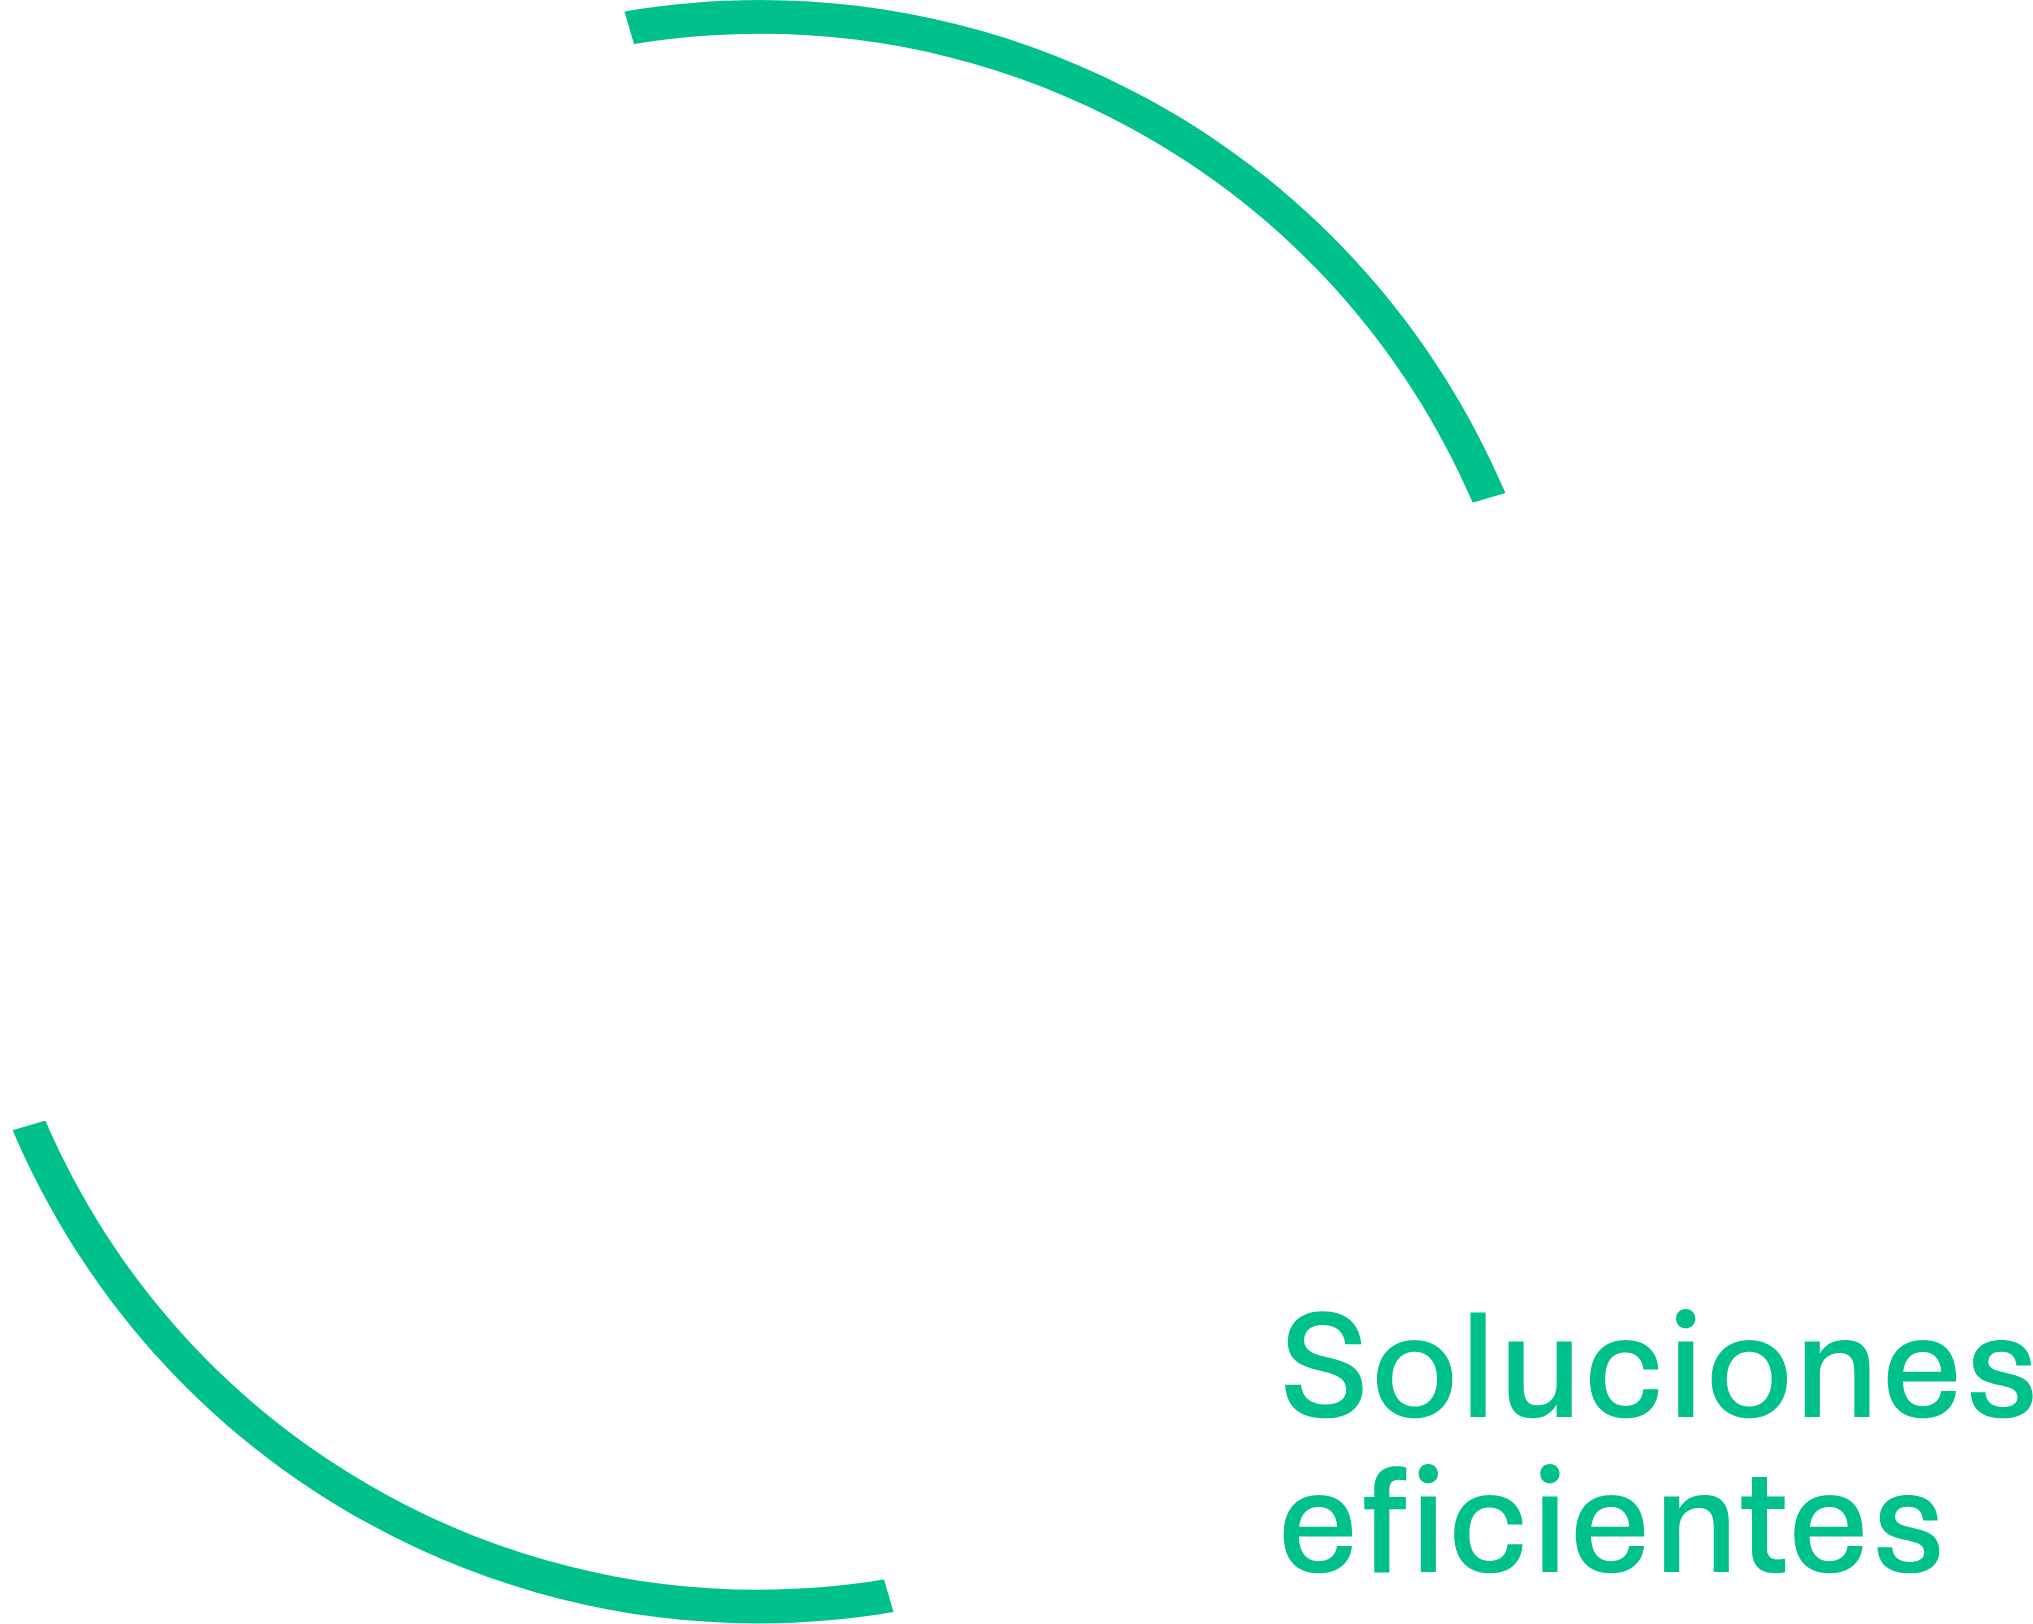 GreenTech Logo